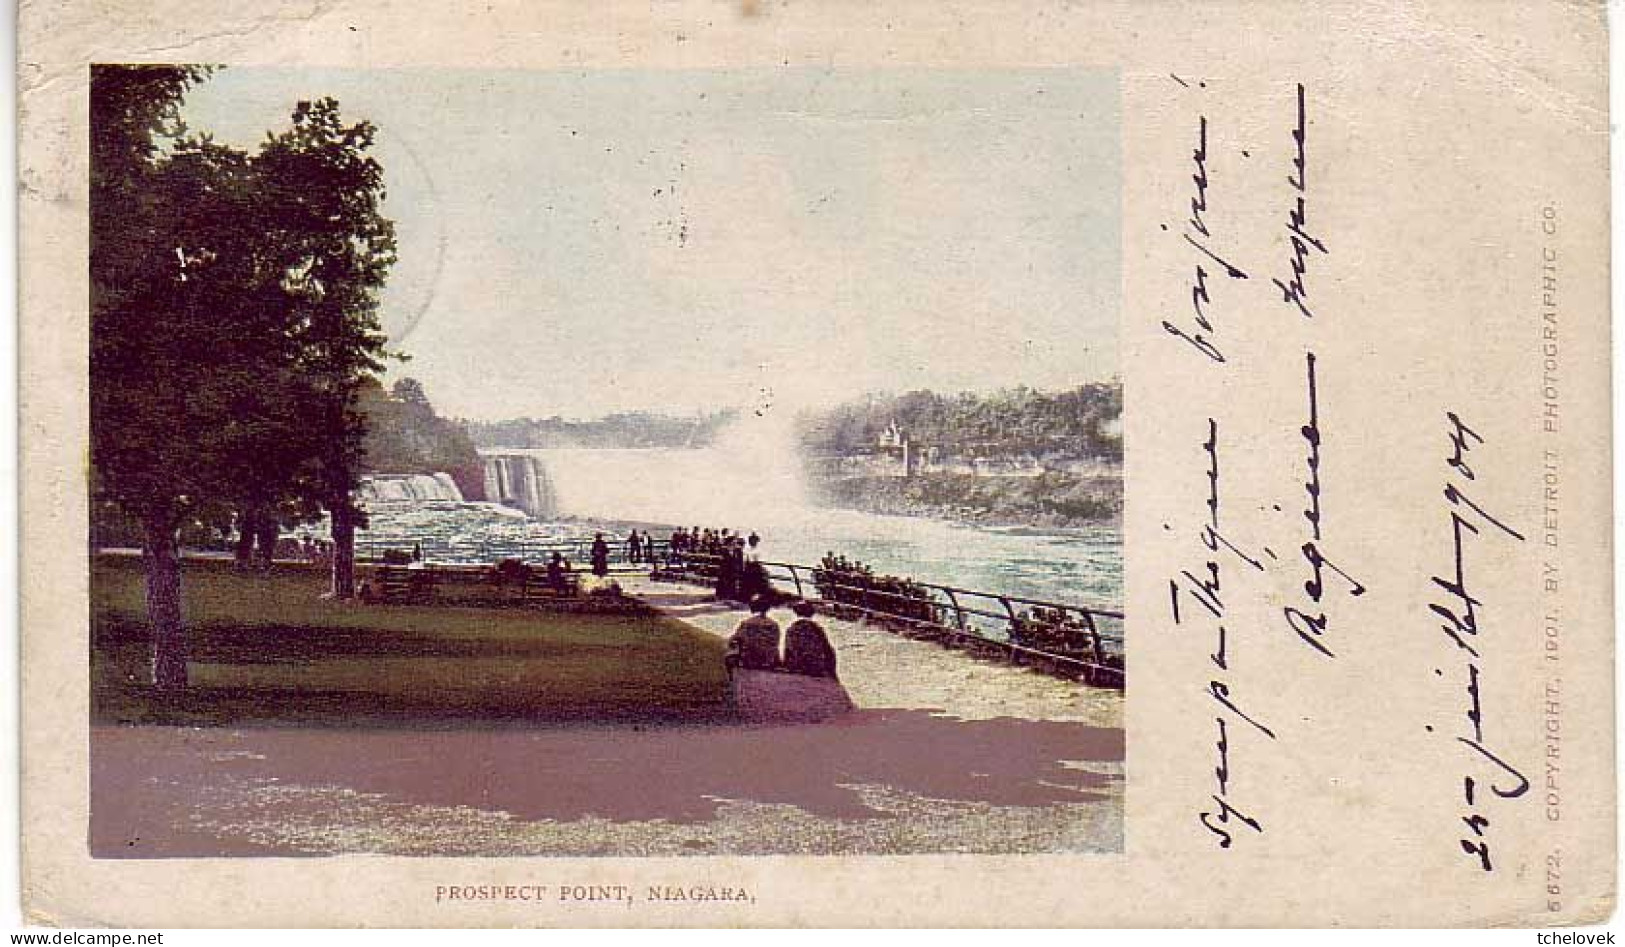 (99). Canada. Chute de Niagara falls (1) & NF 108 & (2) & (3) & 1904 Porspect point 1904 & L 93882 D